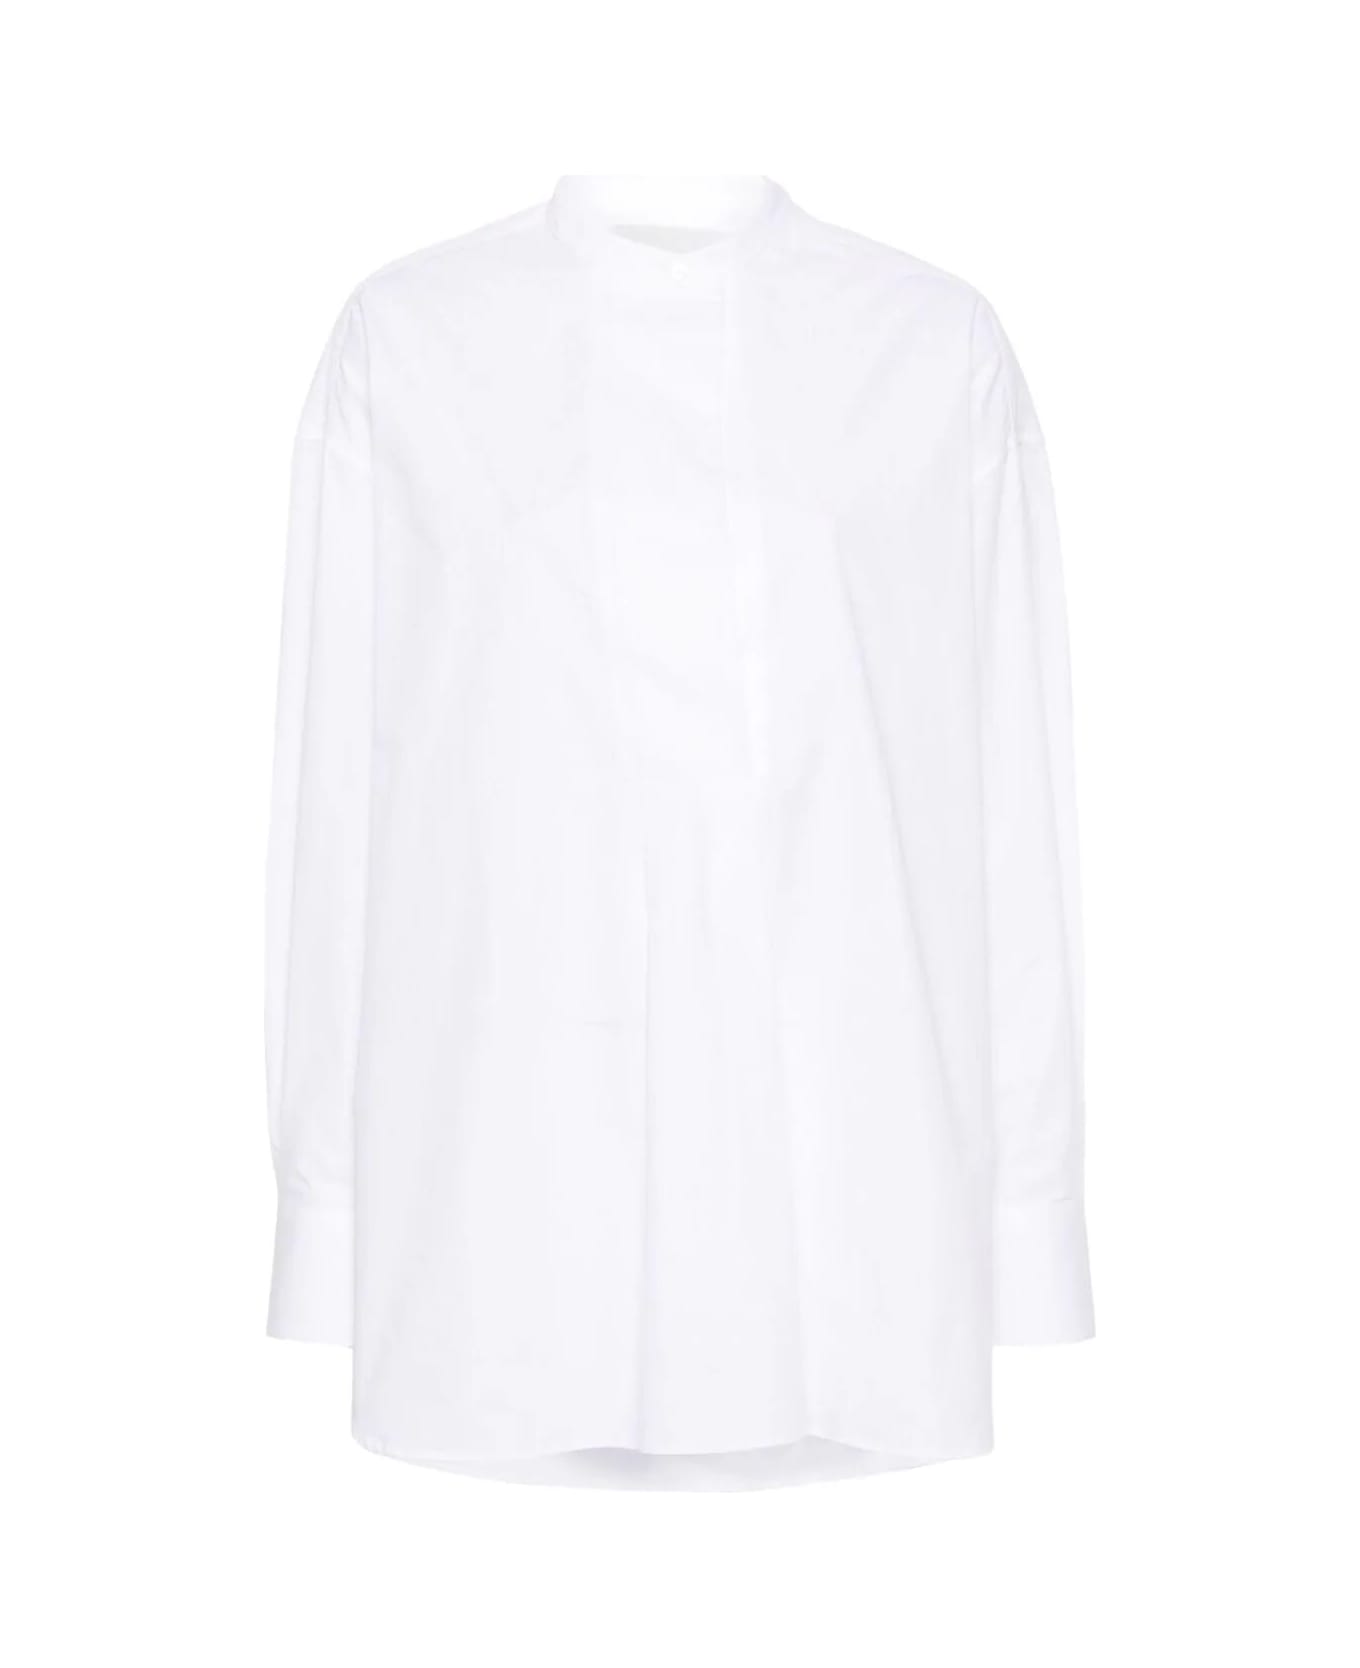 Studio Nicholson Half Placket Shirt - Optic White シャツ